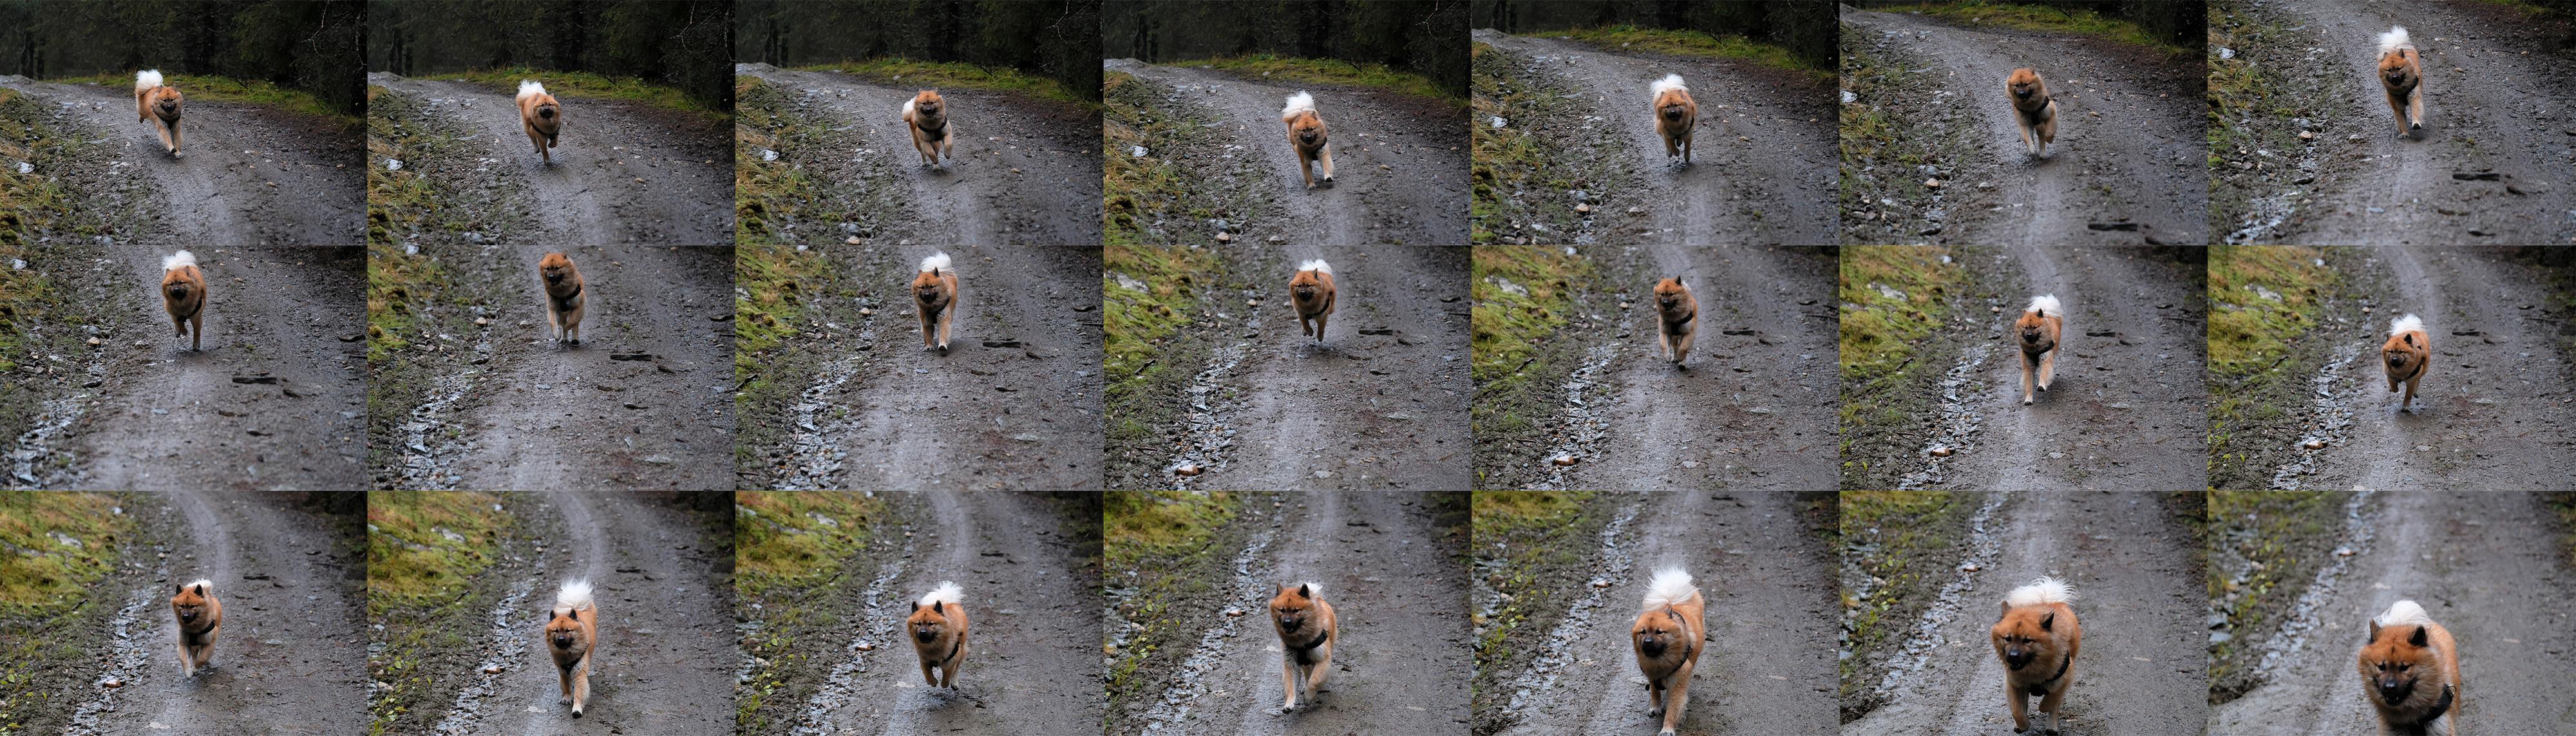 Med den raskeste skuddtakten får vi ikke direktevisning i søkeren, og da blir det utfordrende å følge hunden med kameraet og holde ham midt i bildet gjennom hele serien. 1/1000s - f/2.8 - ISO 6400. JPEG rett fra kameraet, nedskalert.